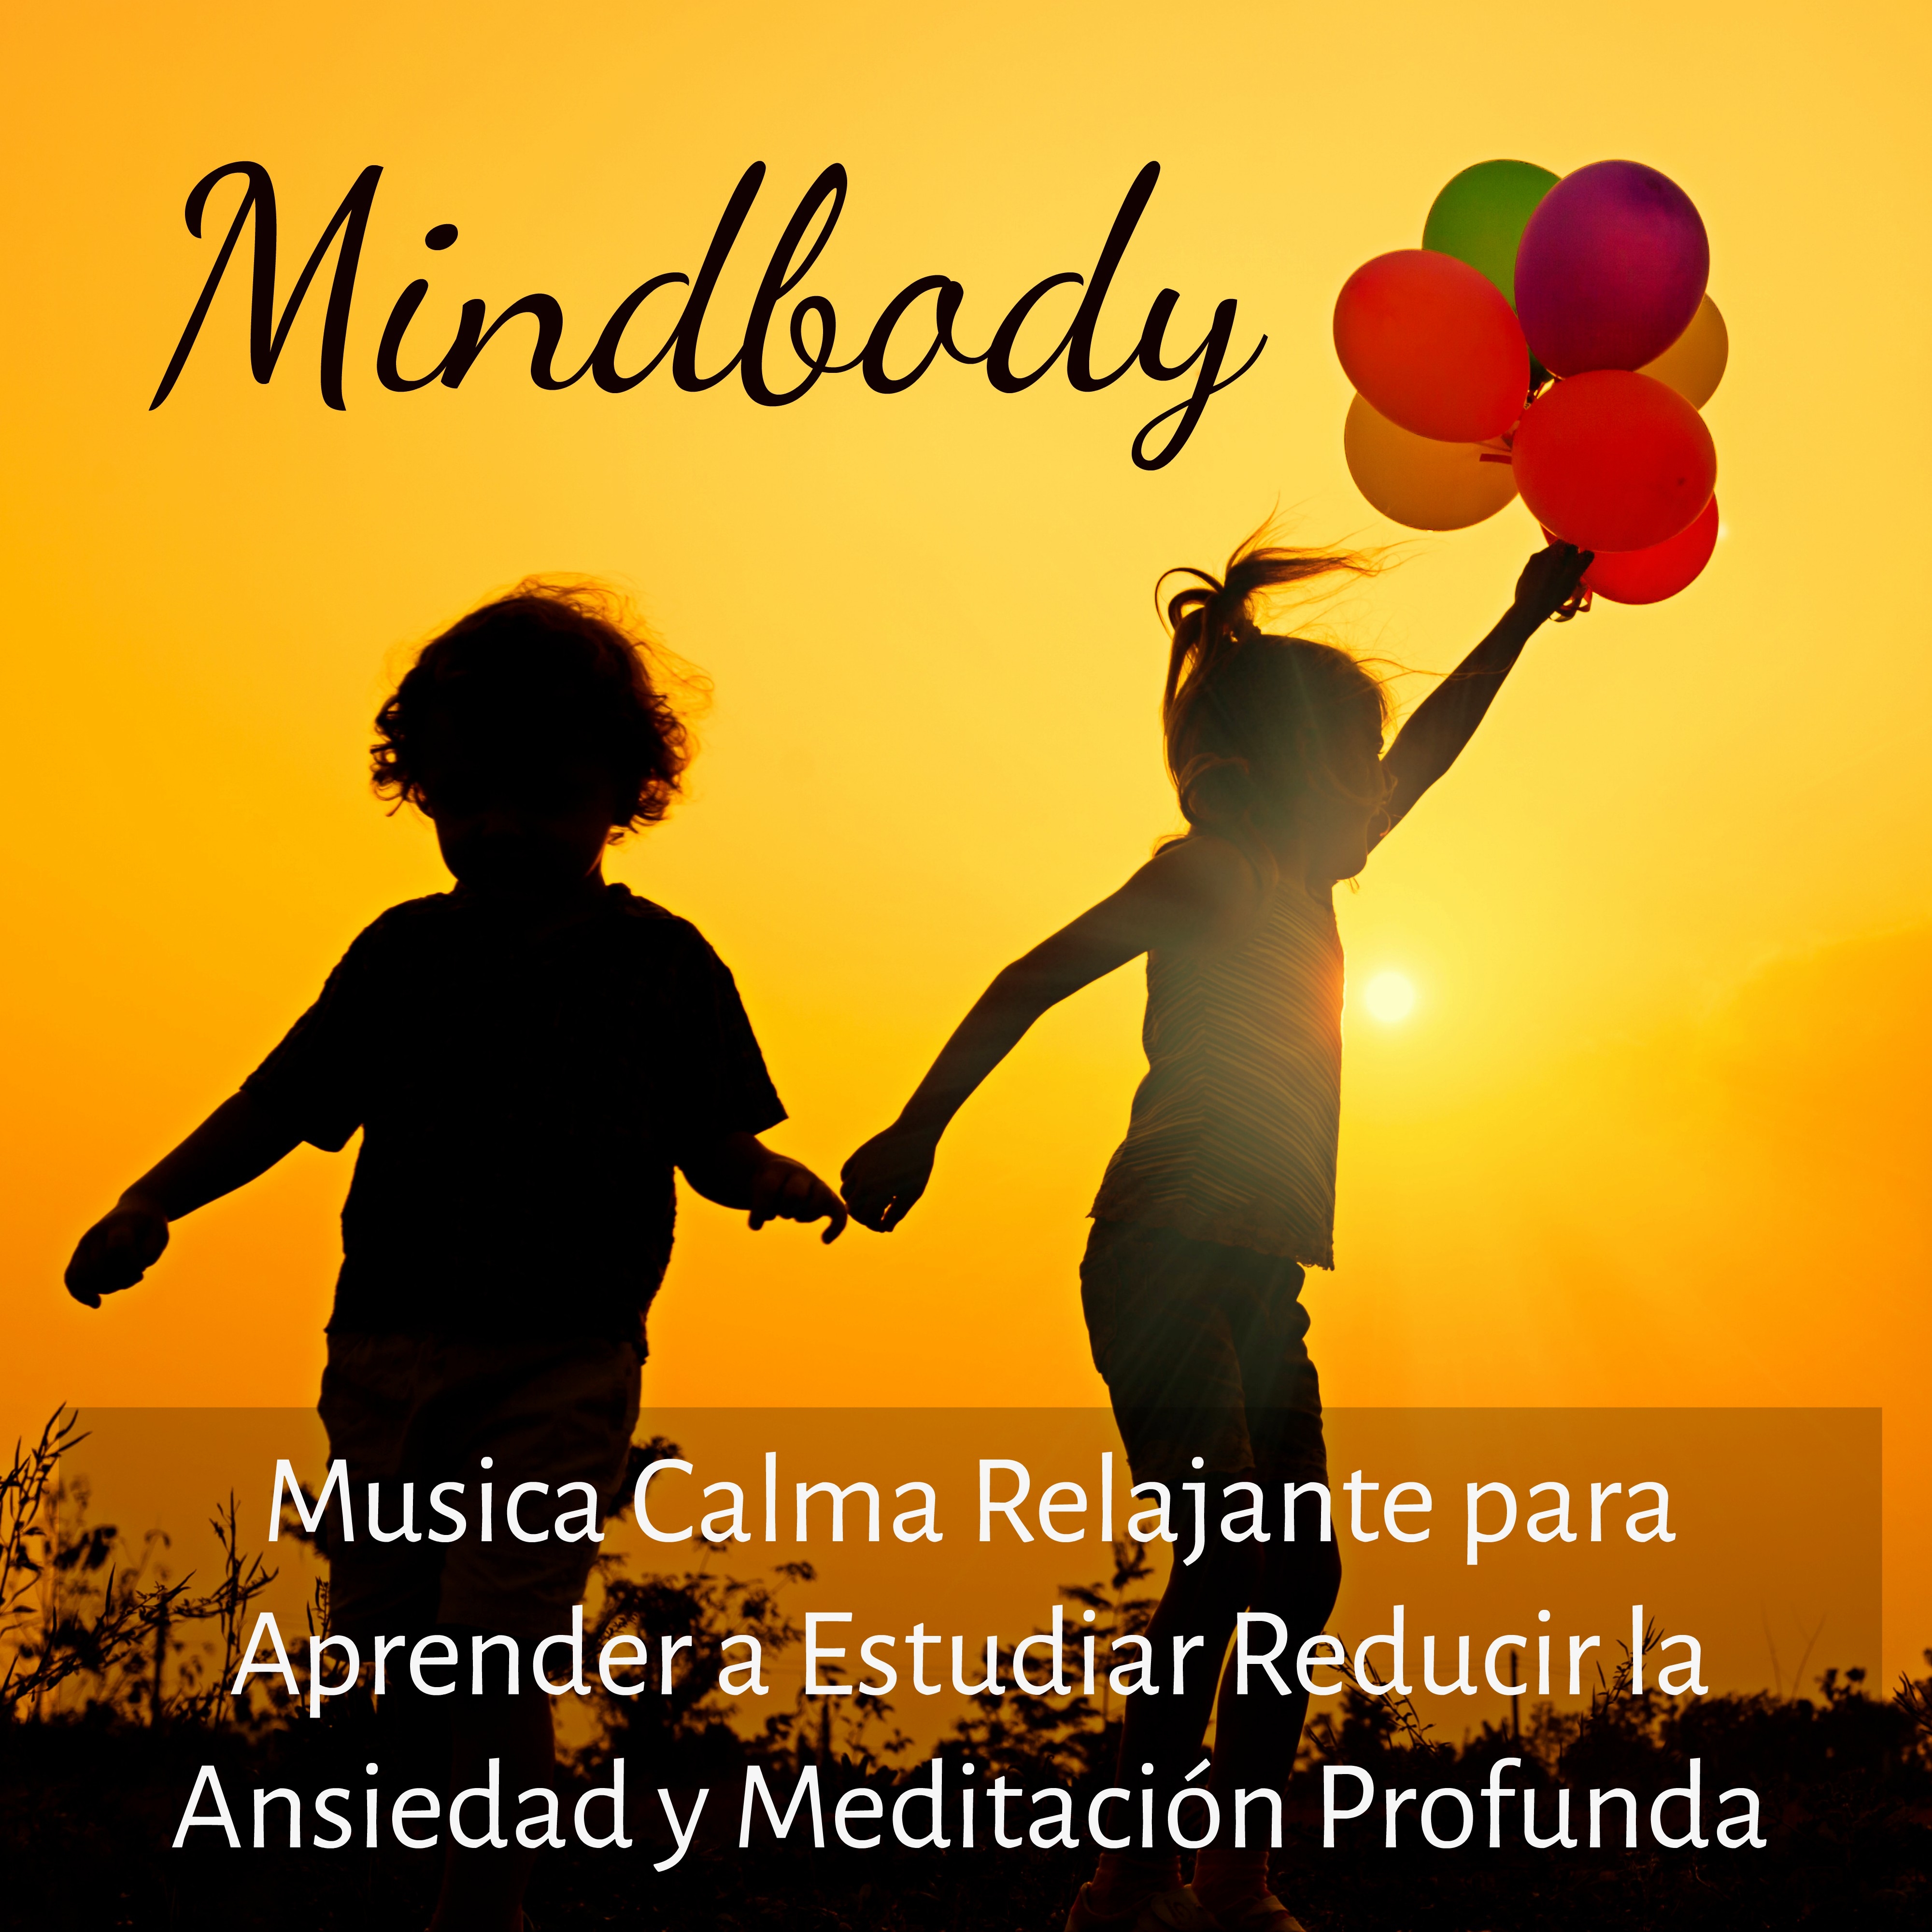 Mindbody - Musica Calma Relajante para Aprender a Estudiar Reducir la Ansiedad y Meditación Profunda